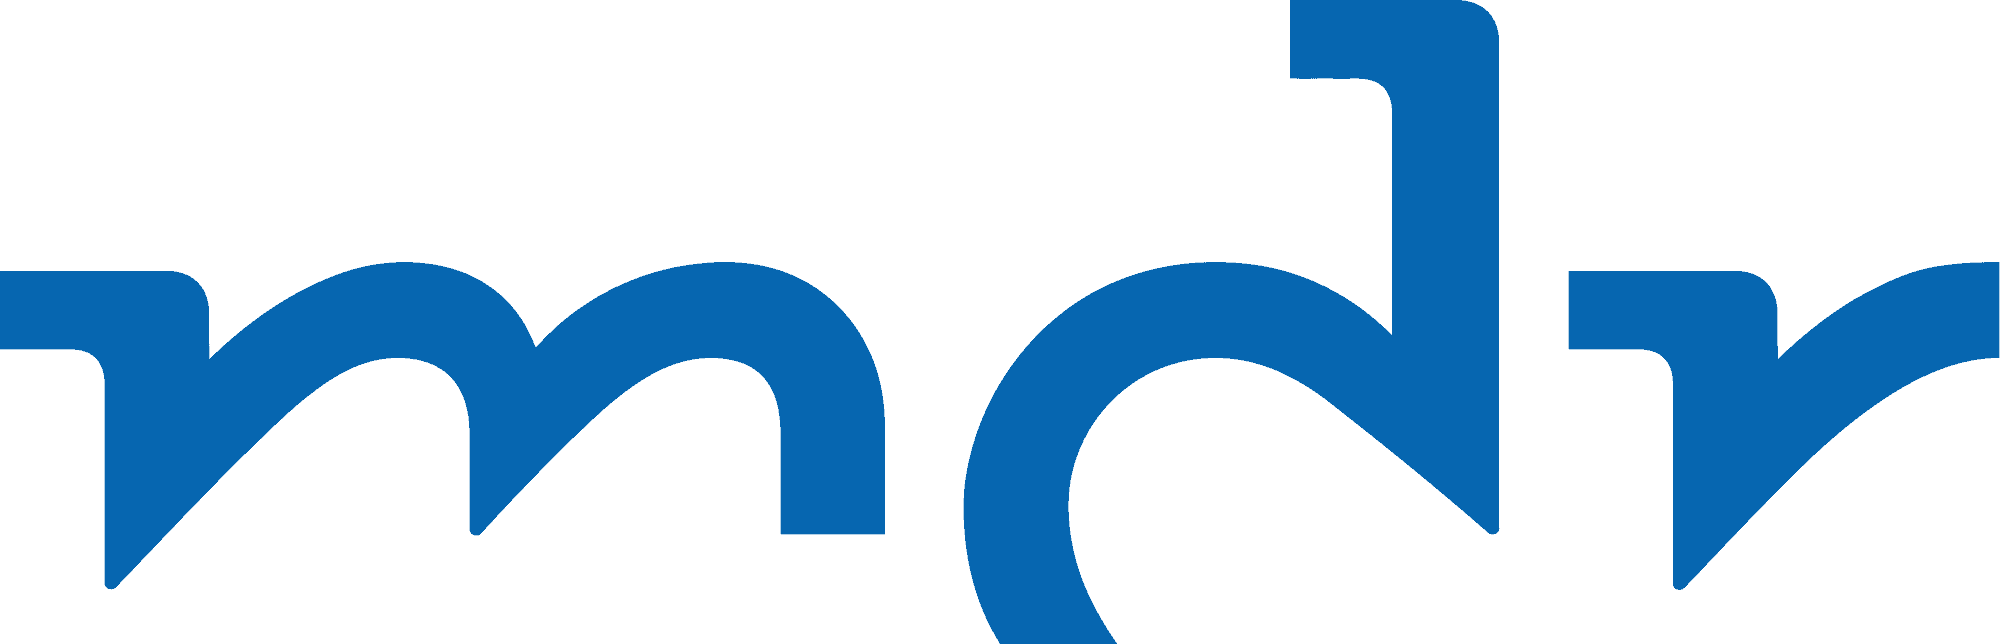 MDR_Logo_2017.svg